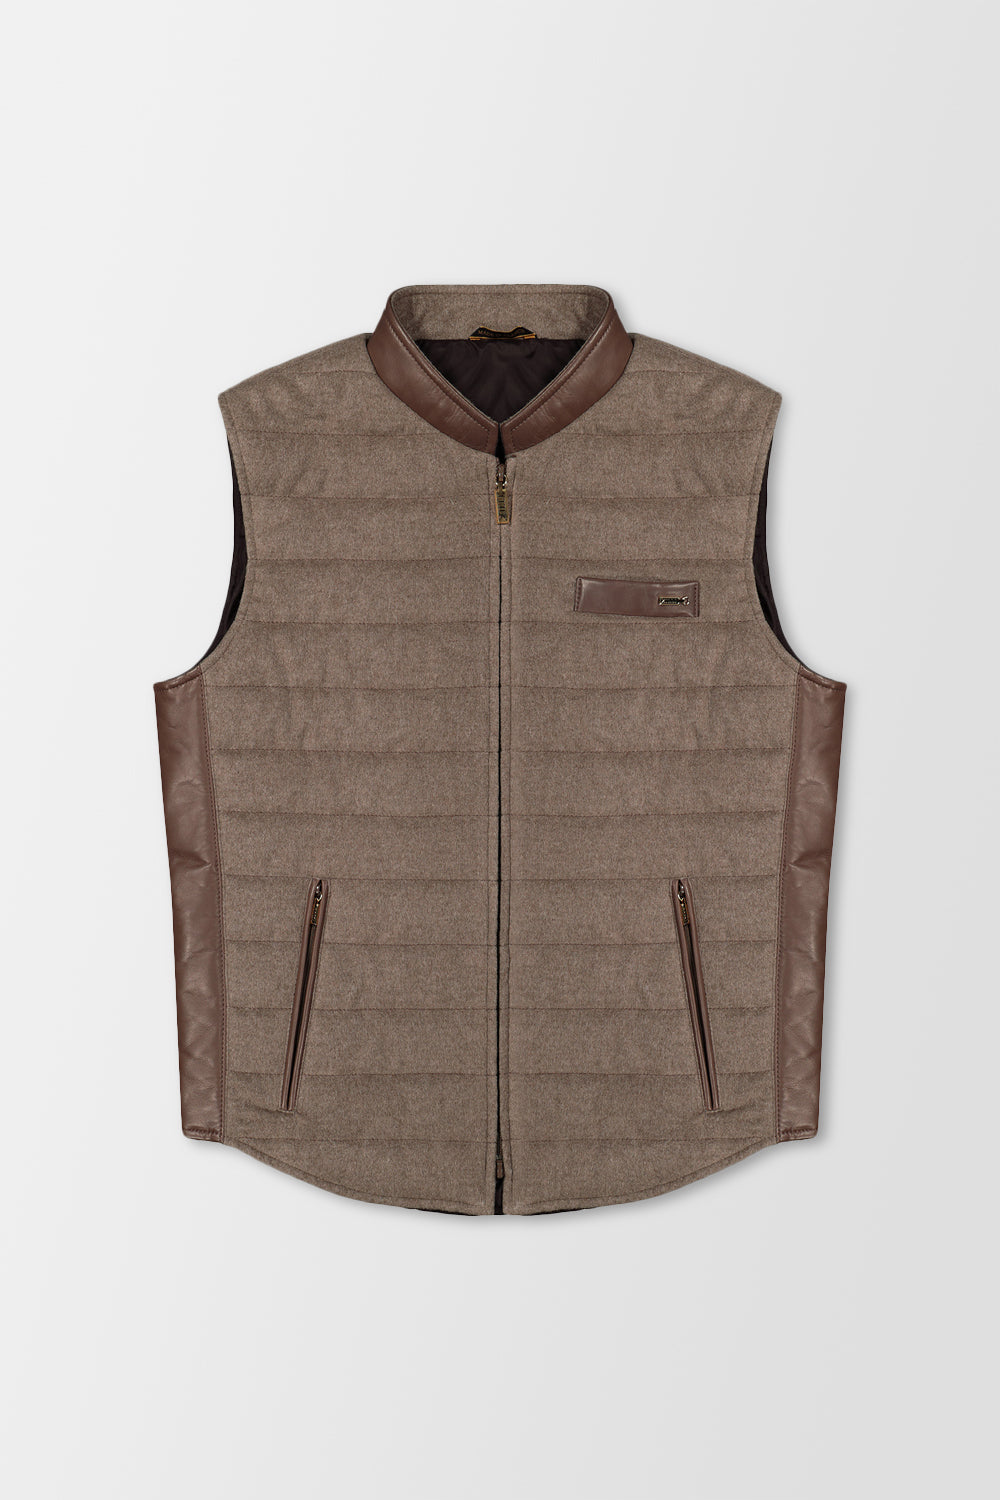 Zilli Beige Wool & Silk W/ Leather Vest